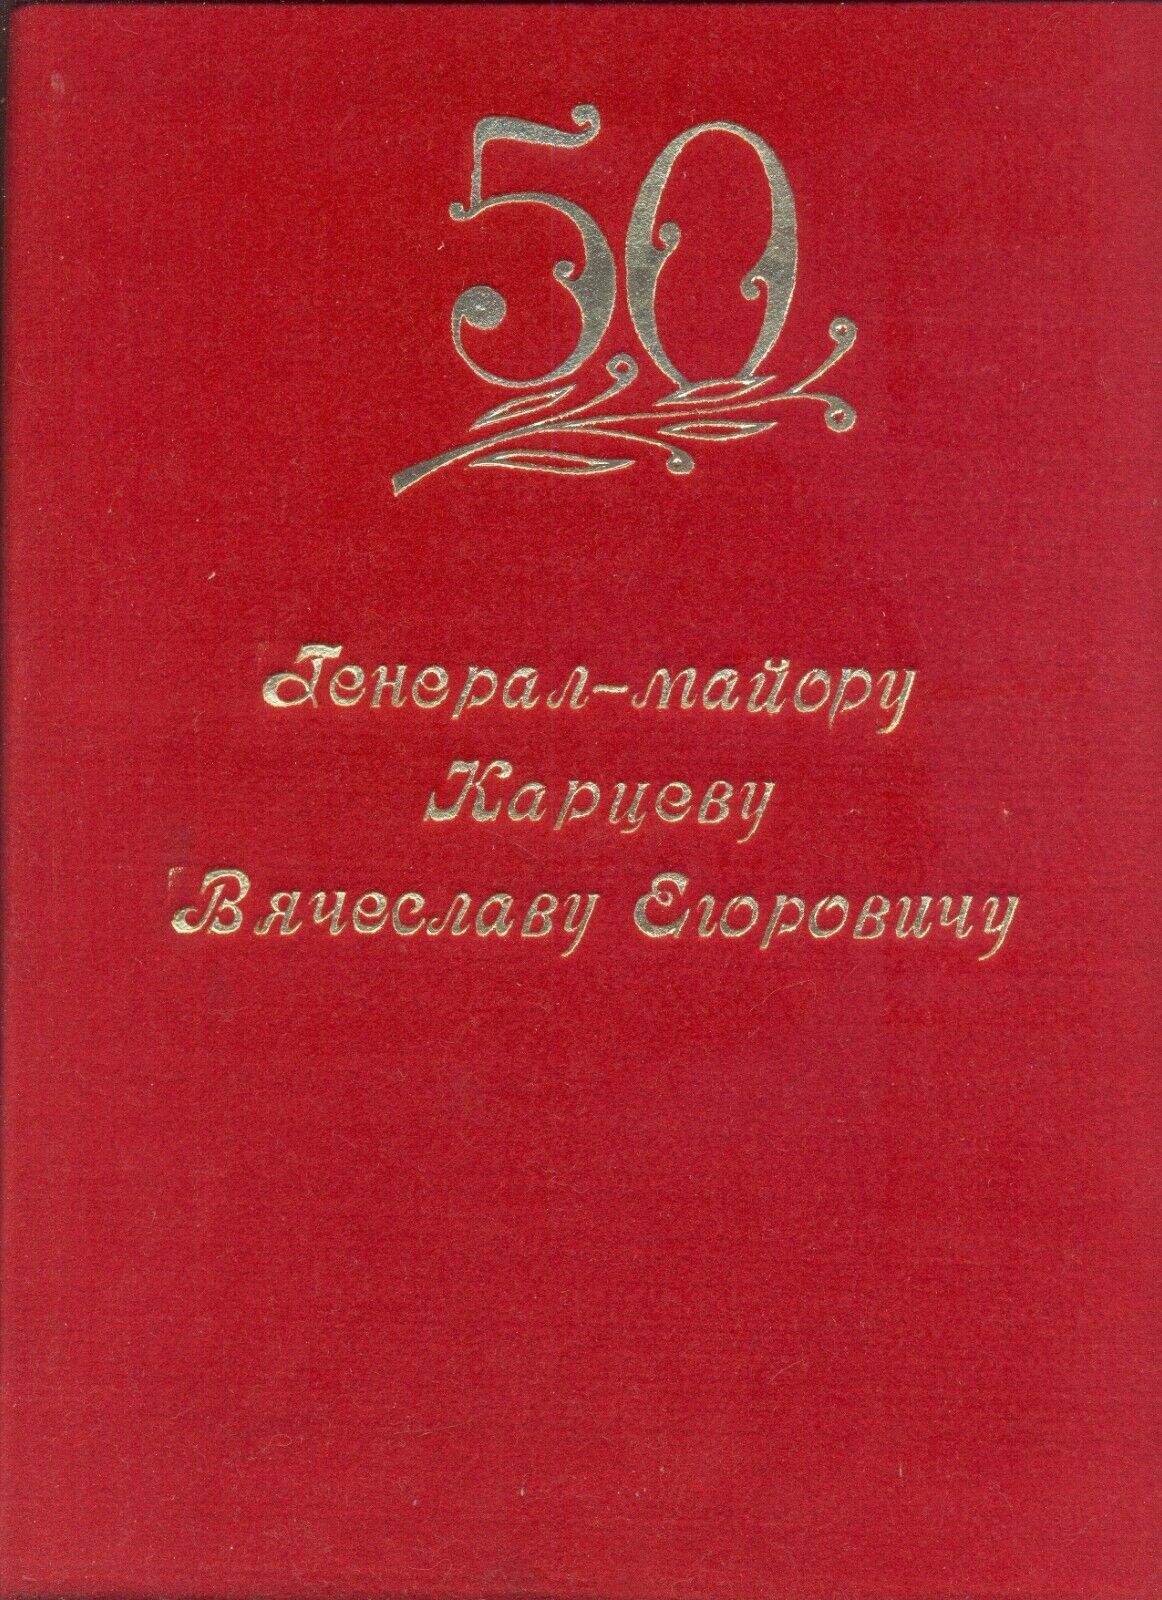 Soviet star banner order red Award Certificate General- Major Propaganda(2300a)